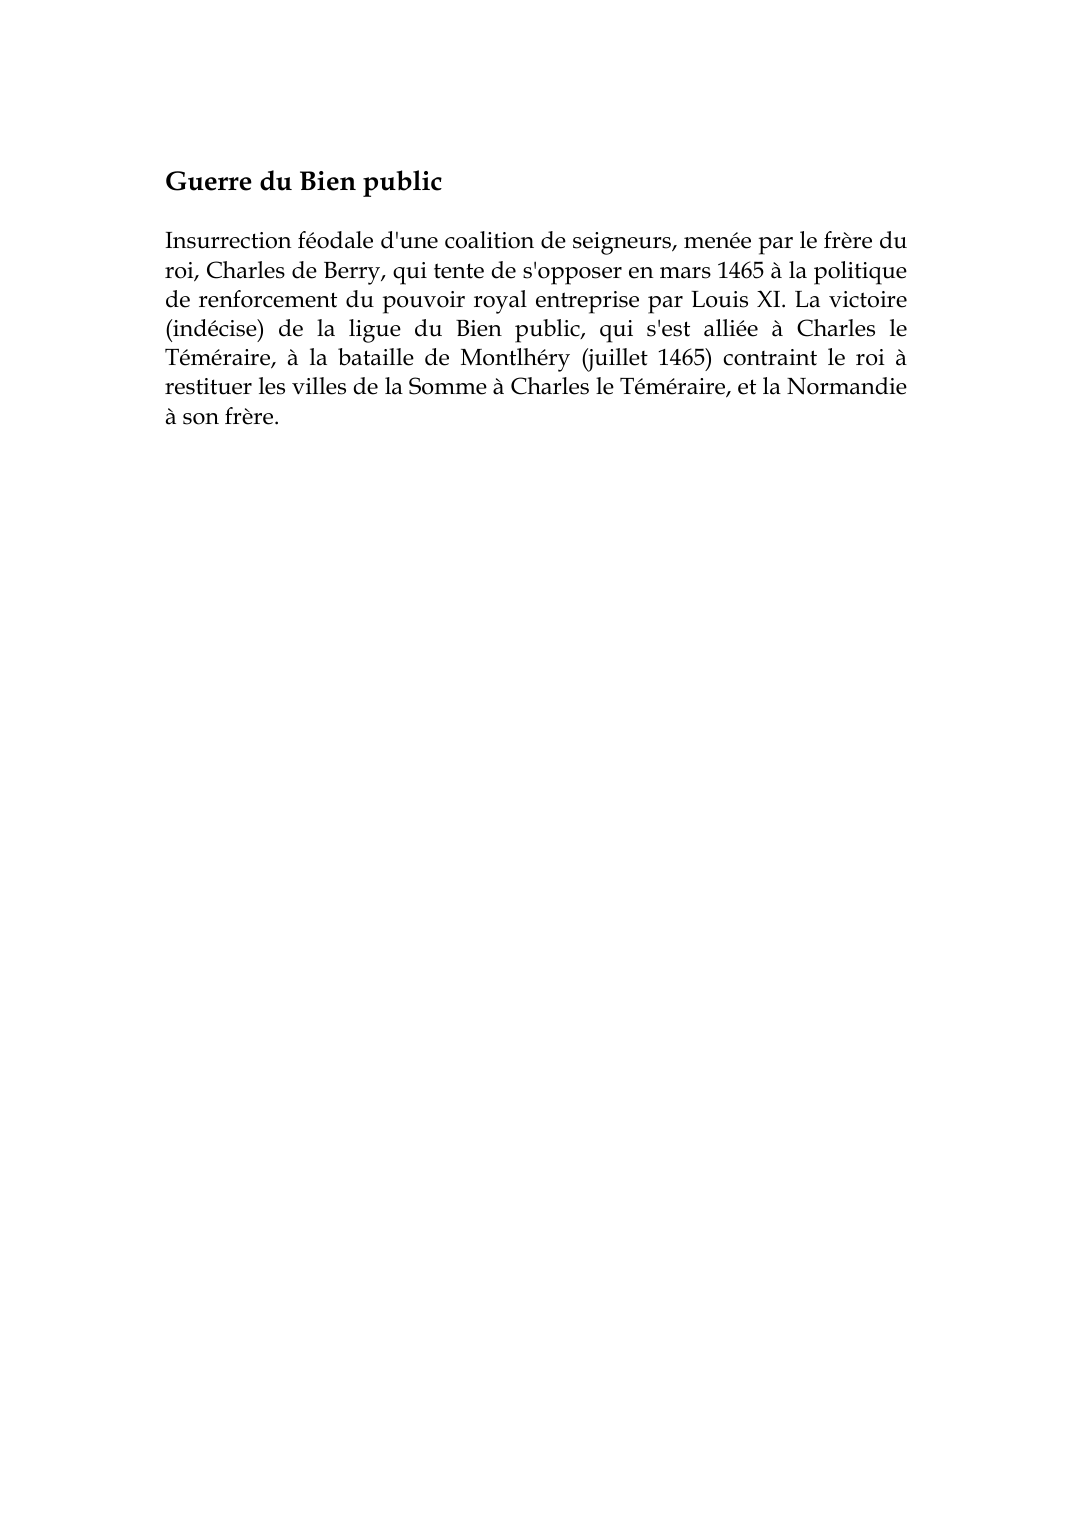 Prévisualisation du document Guerre du Bien publicInsurrection féodale d'une coalition de seigneurs, menée par le frère duroi, Charles de Berry, qui tente de s'opposer en mars 1465 à la politiquede renforcement du pouvoir royal entreprise par Louis XI.